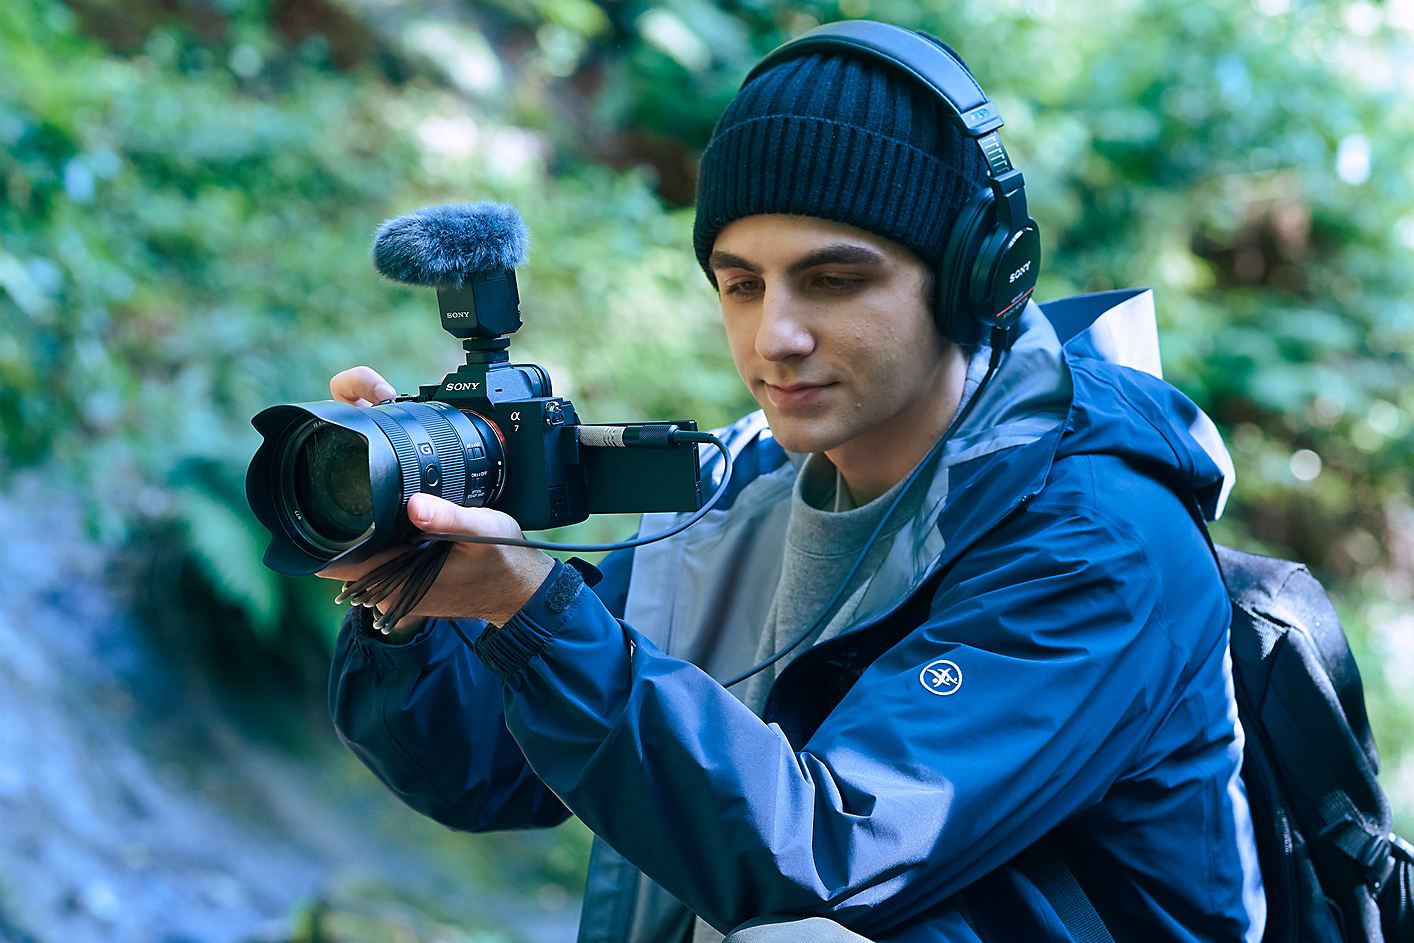 Snimatelj snima u prirodi, zvuk prati putem slušalica. Fotoaparat je opremljen mikrofonom ECM-B10 u višesmjernom načinu rada.